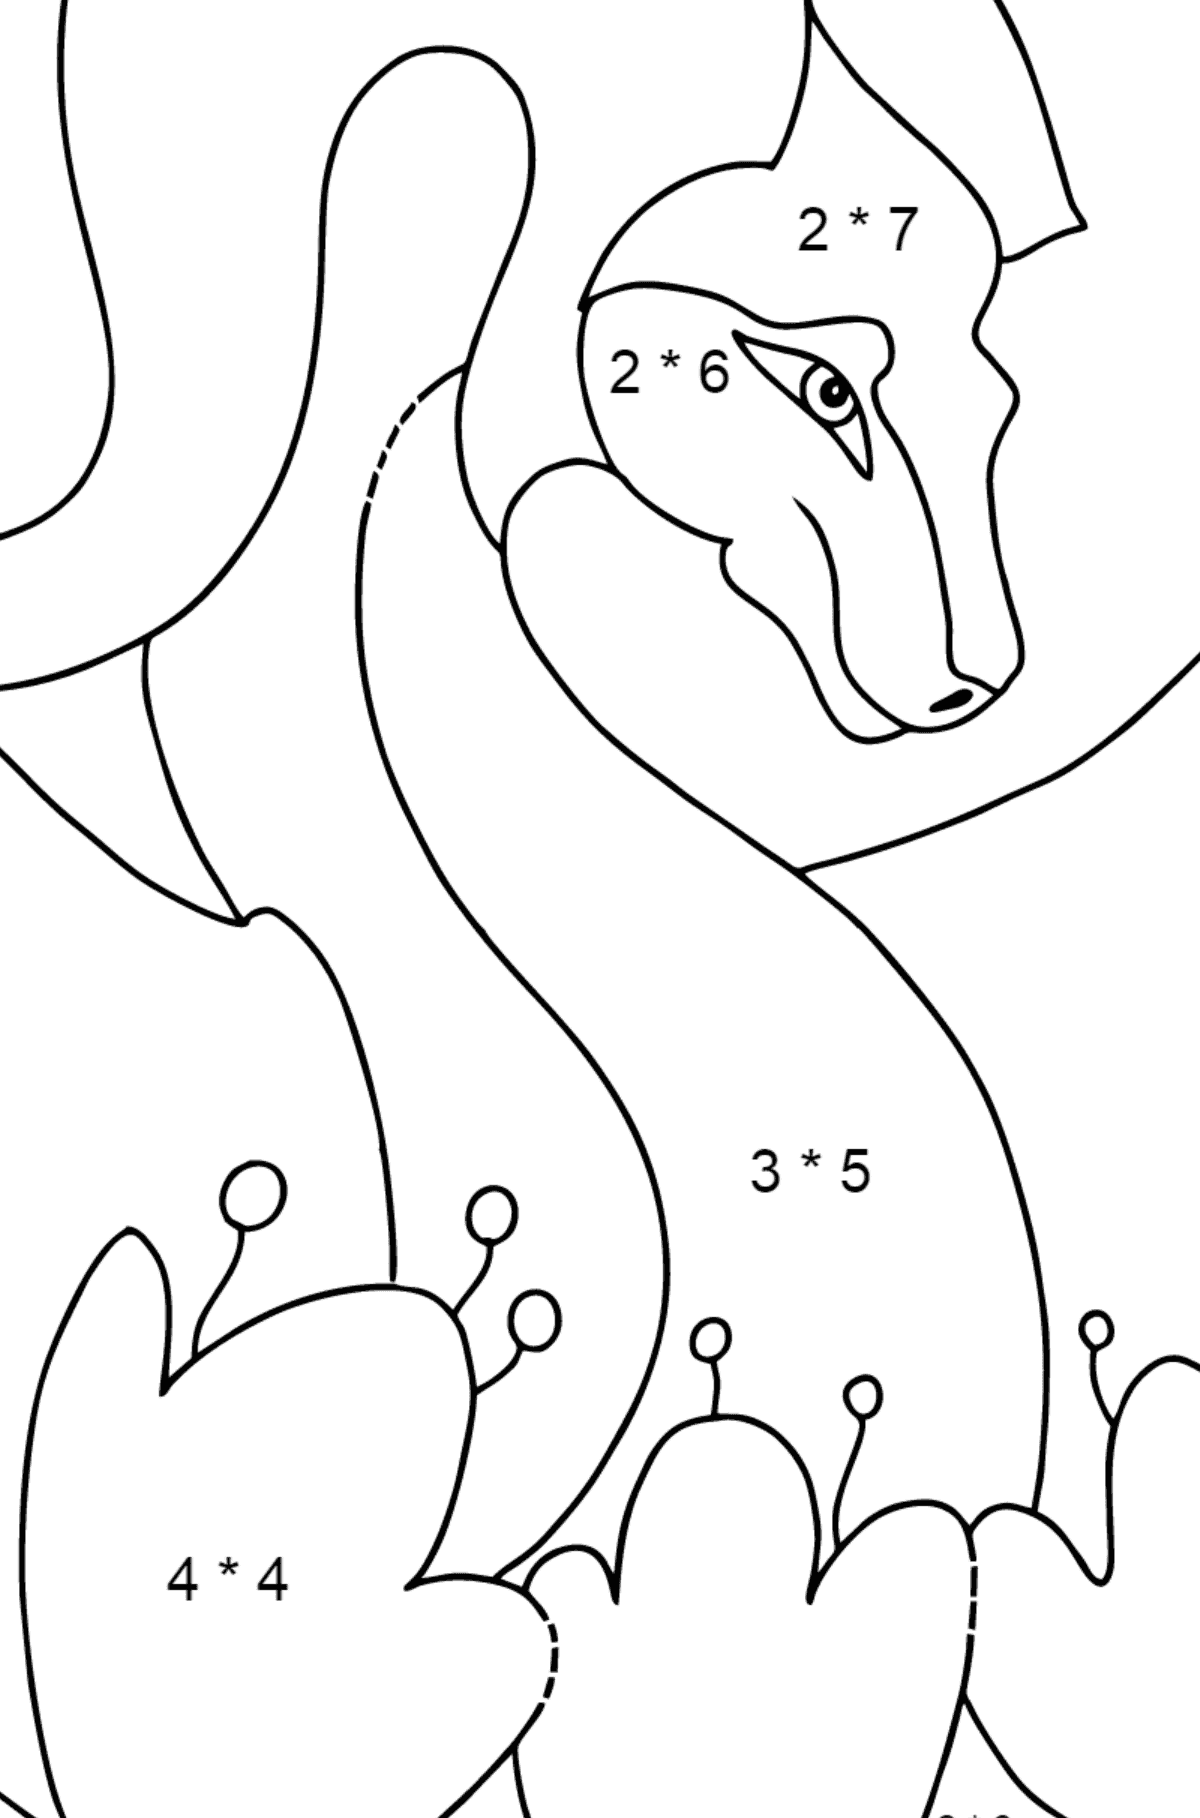 Desenho para colorir dragão colorido (simples) - Colorindo com Matemática - Multiplicação para Crianças